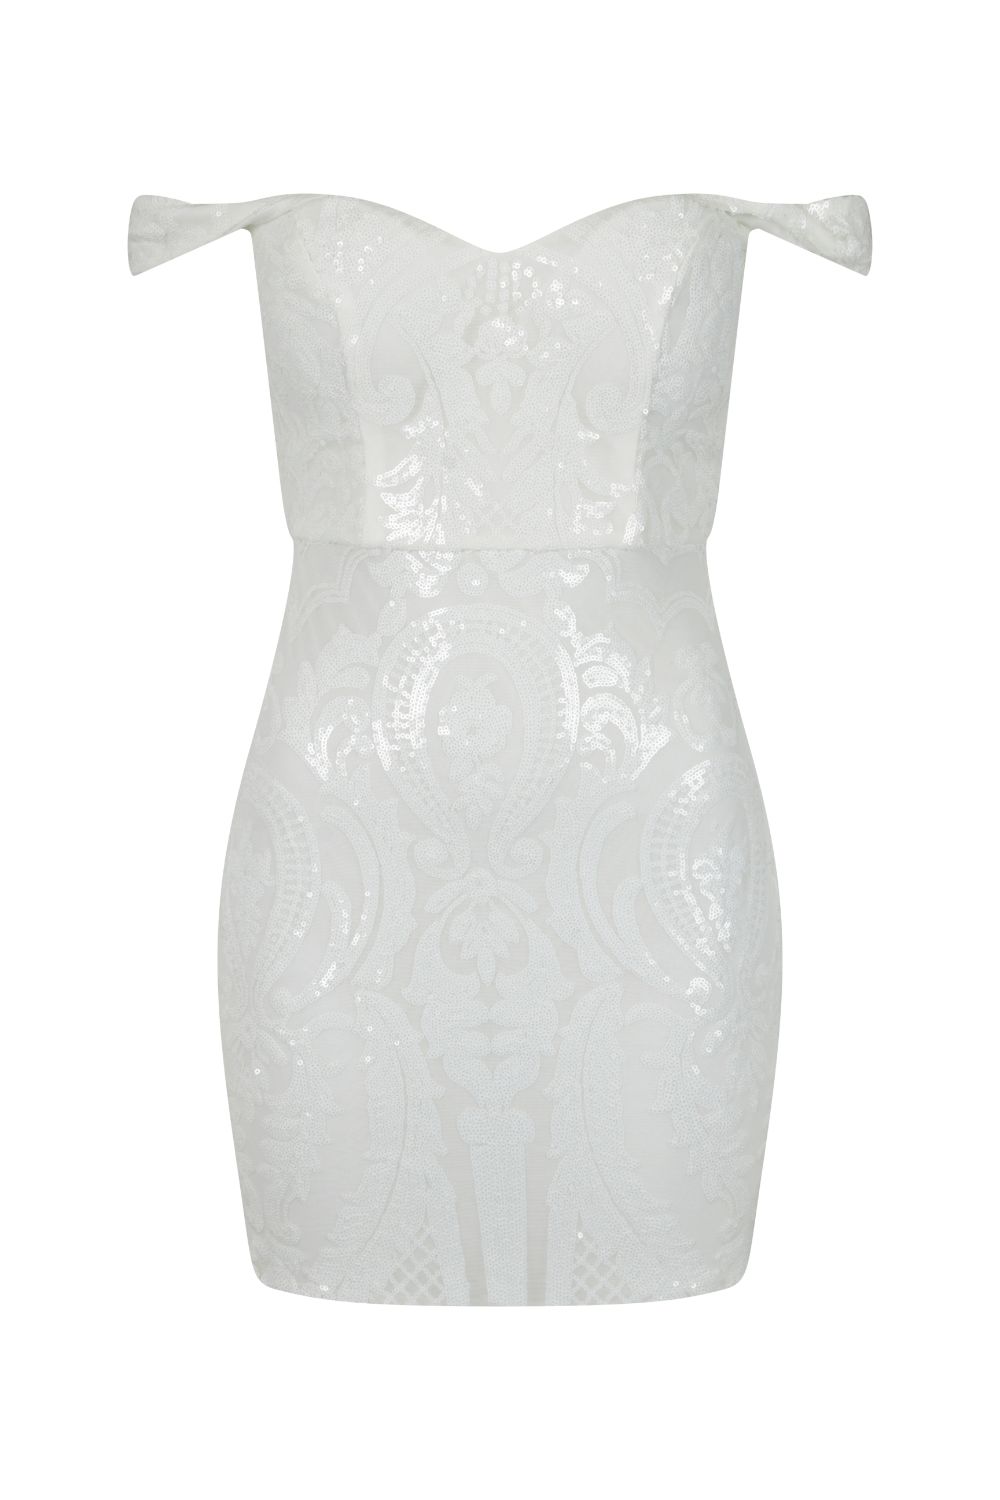 Alexiya White Bardot Sweetheart Sequin Embellished Illusion Dress